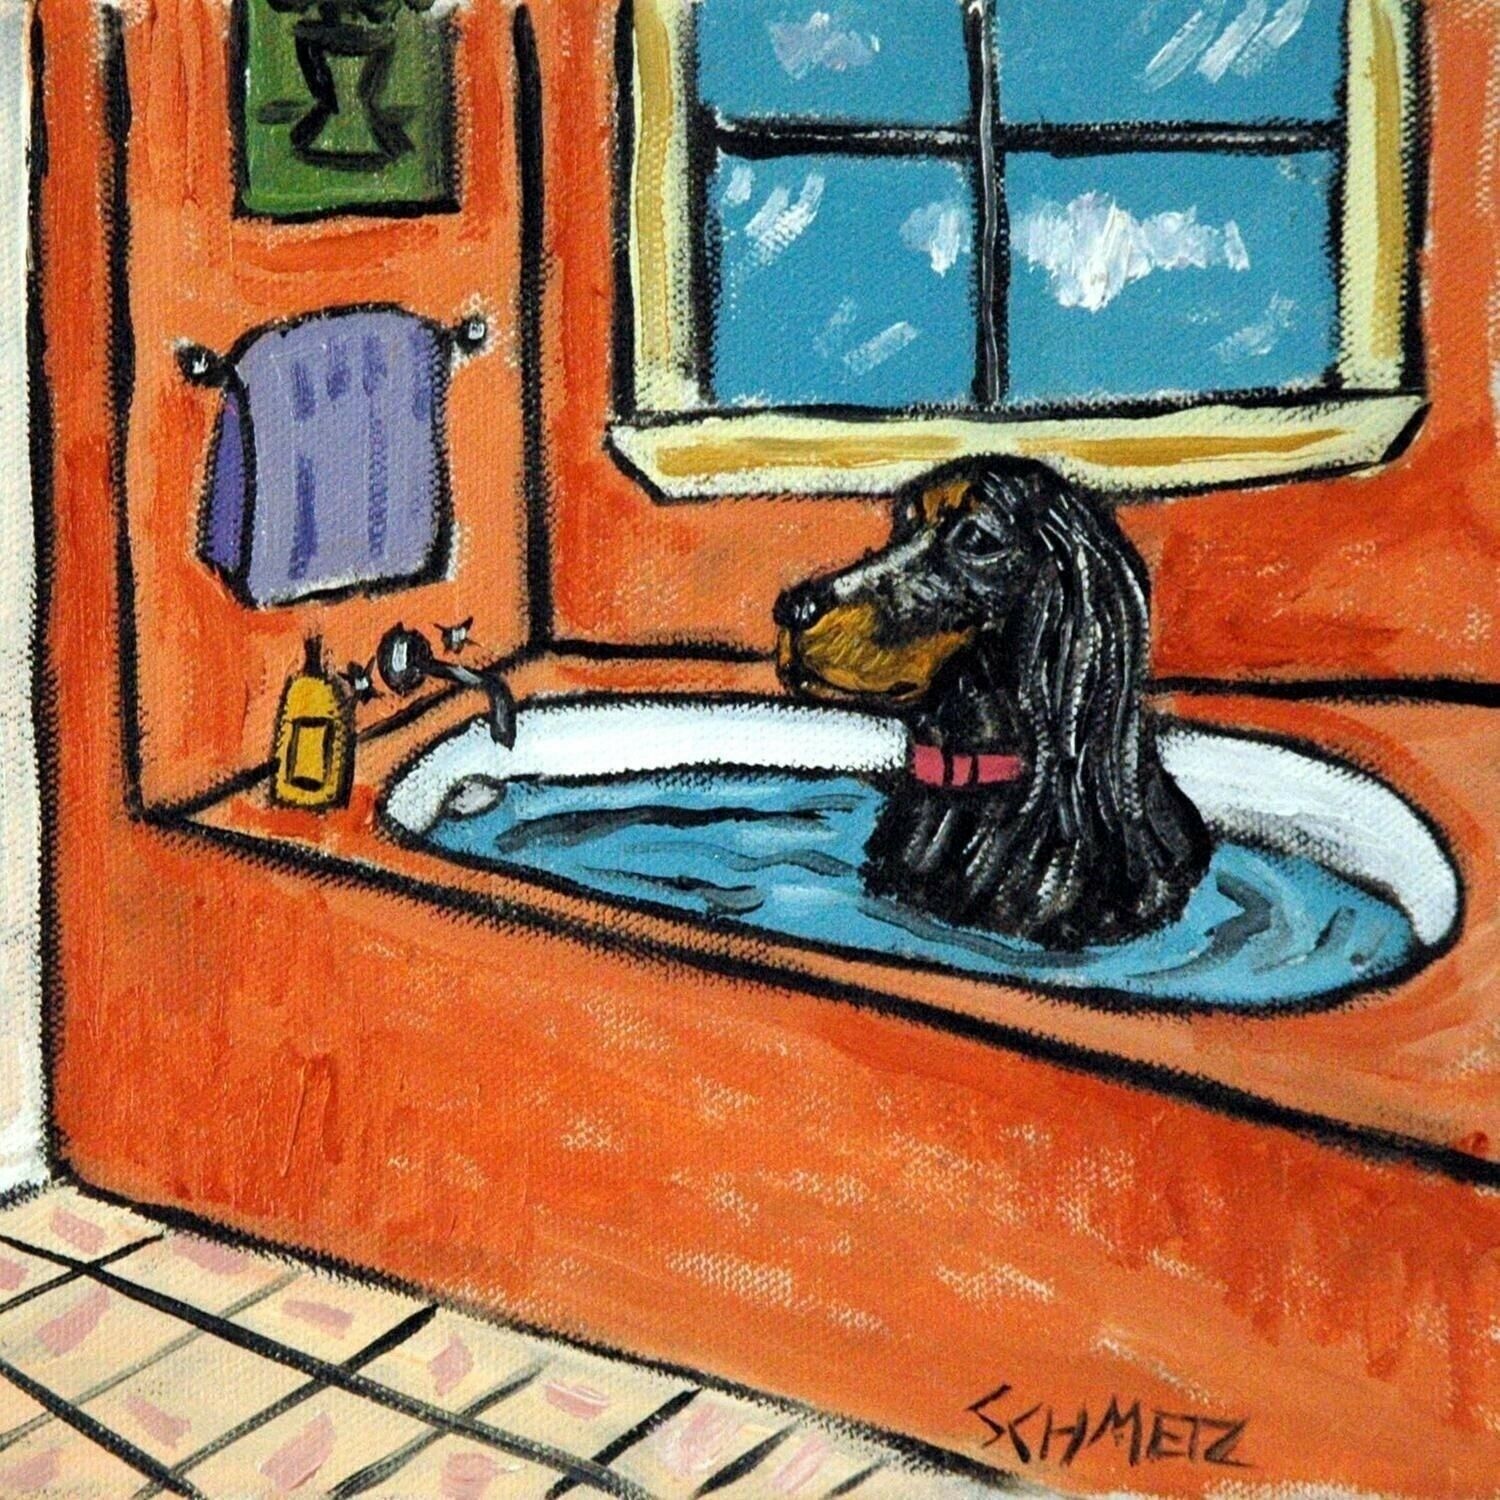 GORDON SETTER taking a bath DOG ART TILE COASTER gift artwork